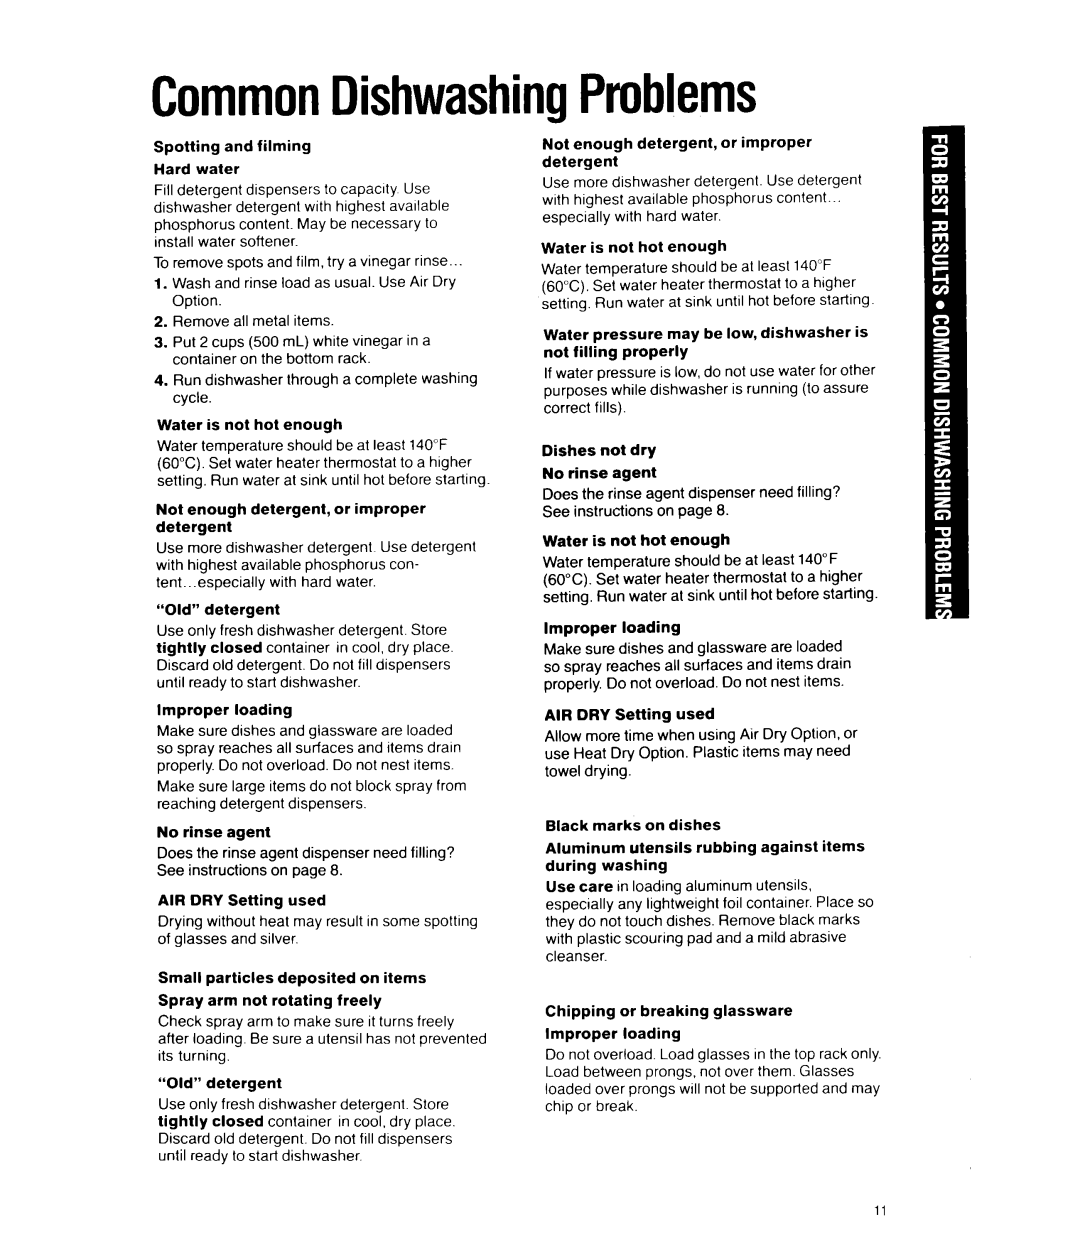 Whirlpool DU4000XY manual CommonDishwashingProblems 